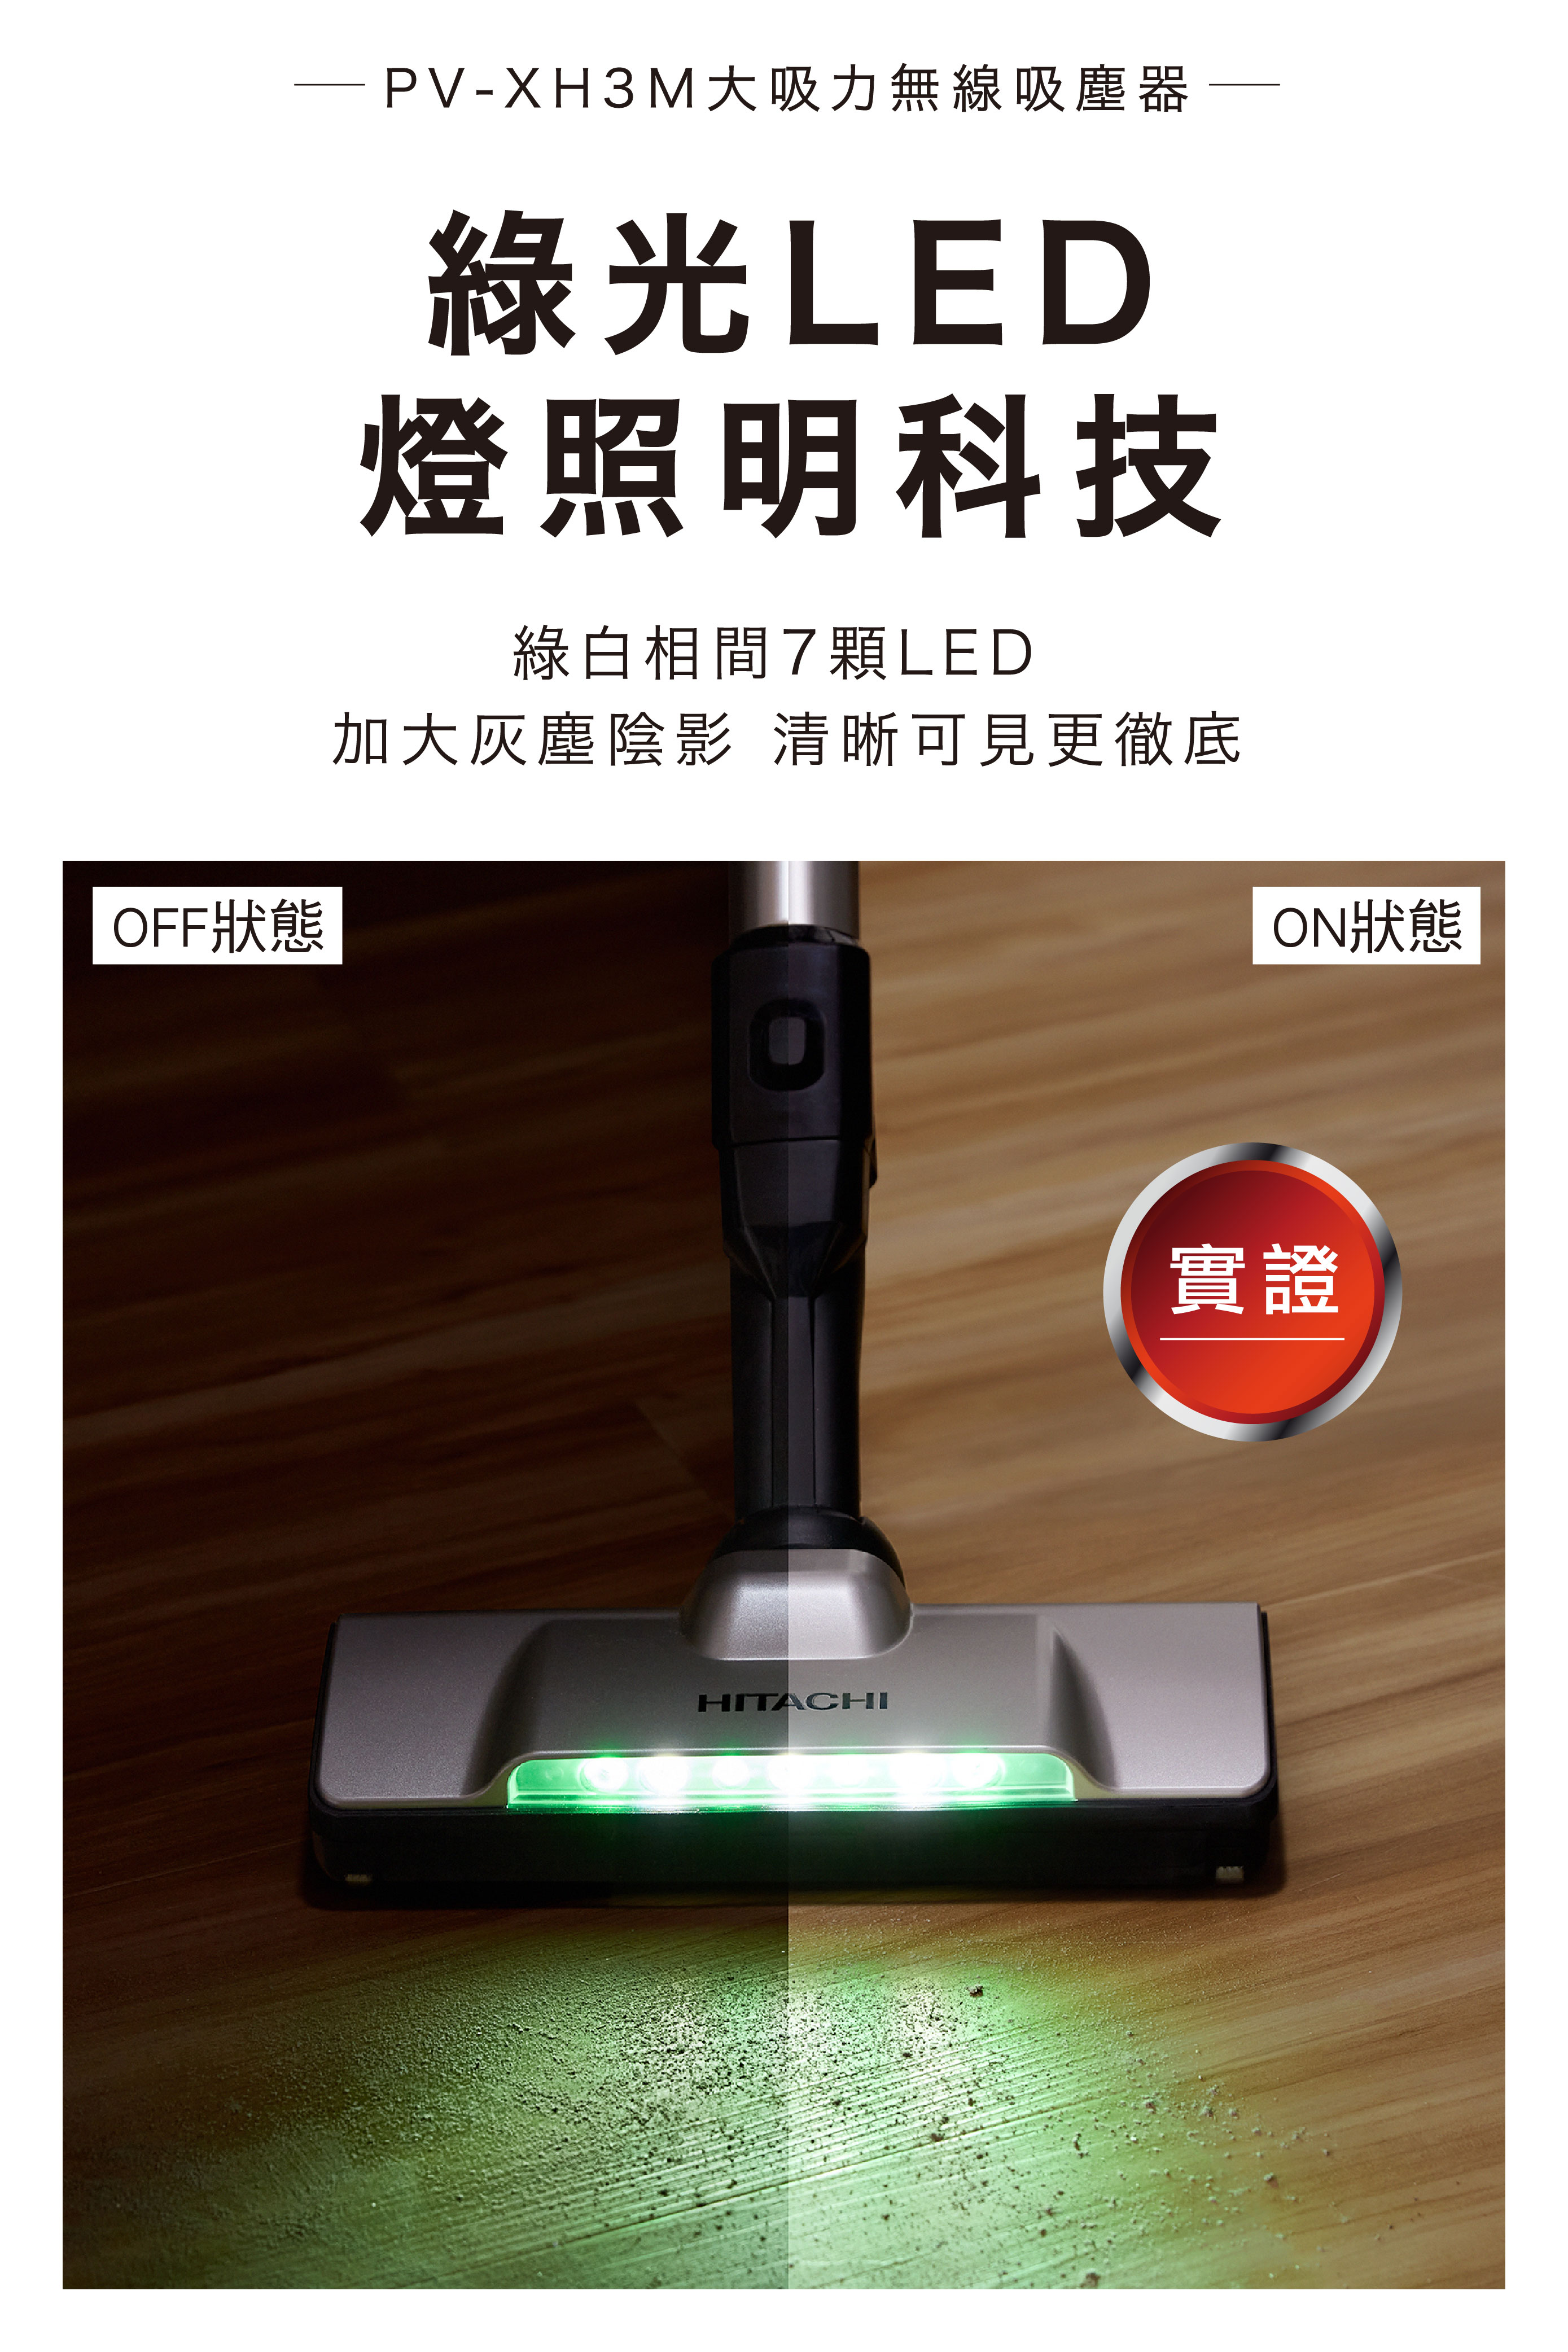 PV-XH3M大吸力無線吸塵器綠光LED燈照明科技綠白相間7顆LED加大灰塵陰影 清晰可見更徹底HITACHI實證